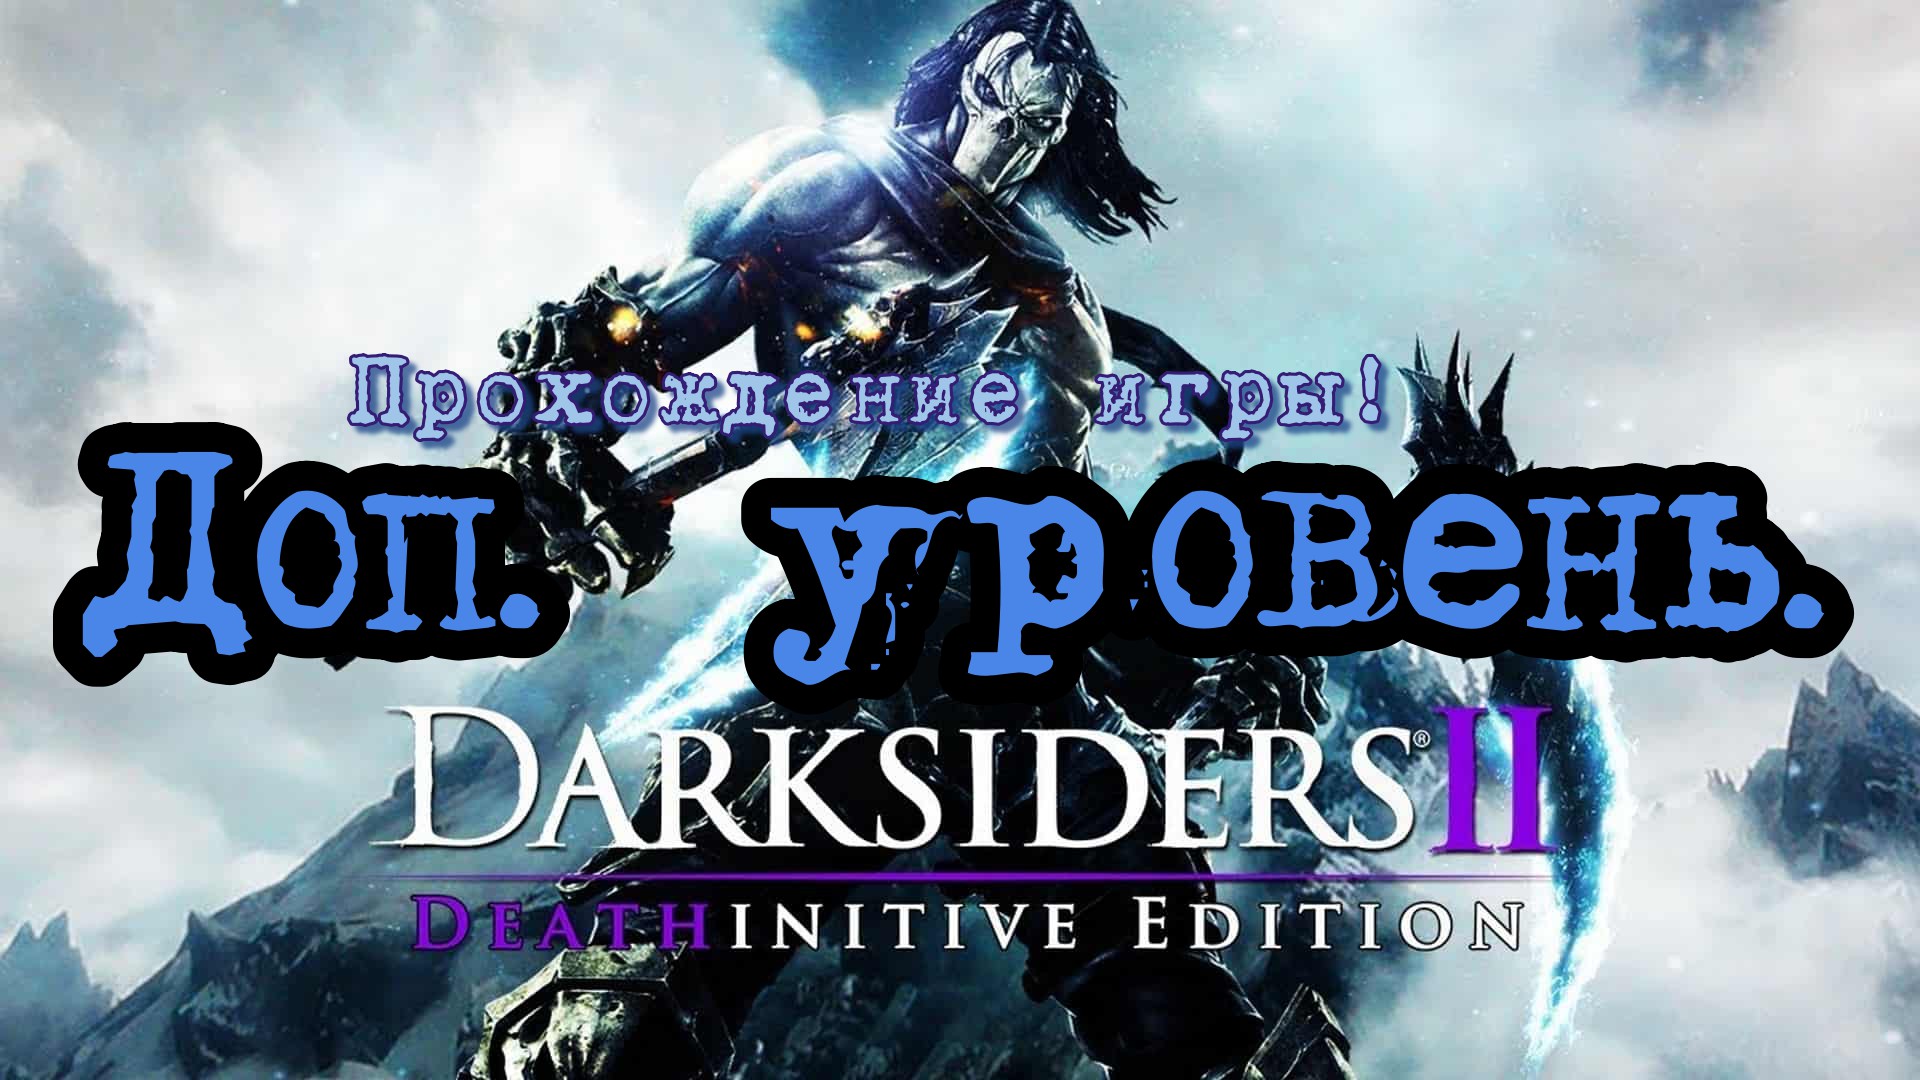 Прохождение игры - Darksiders 2 # 4. (Кузница в бездне) PC - HD - Full 1080p.